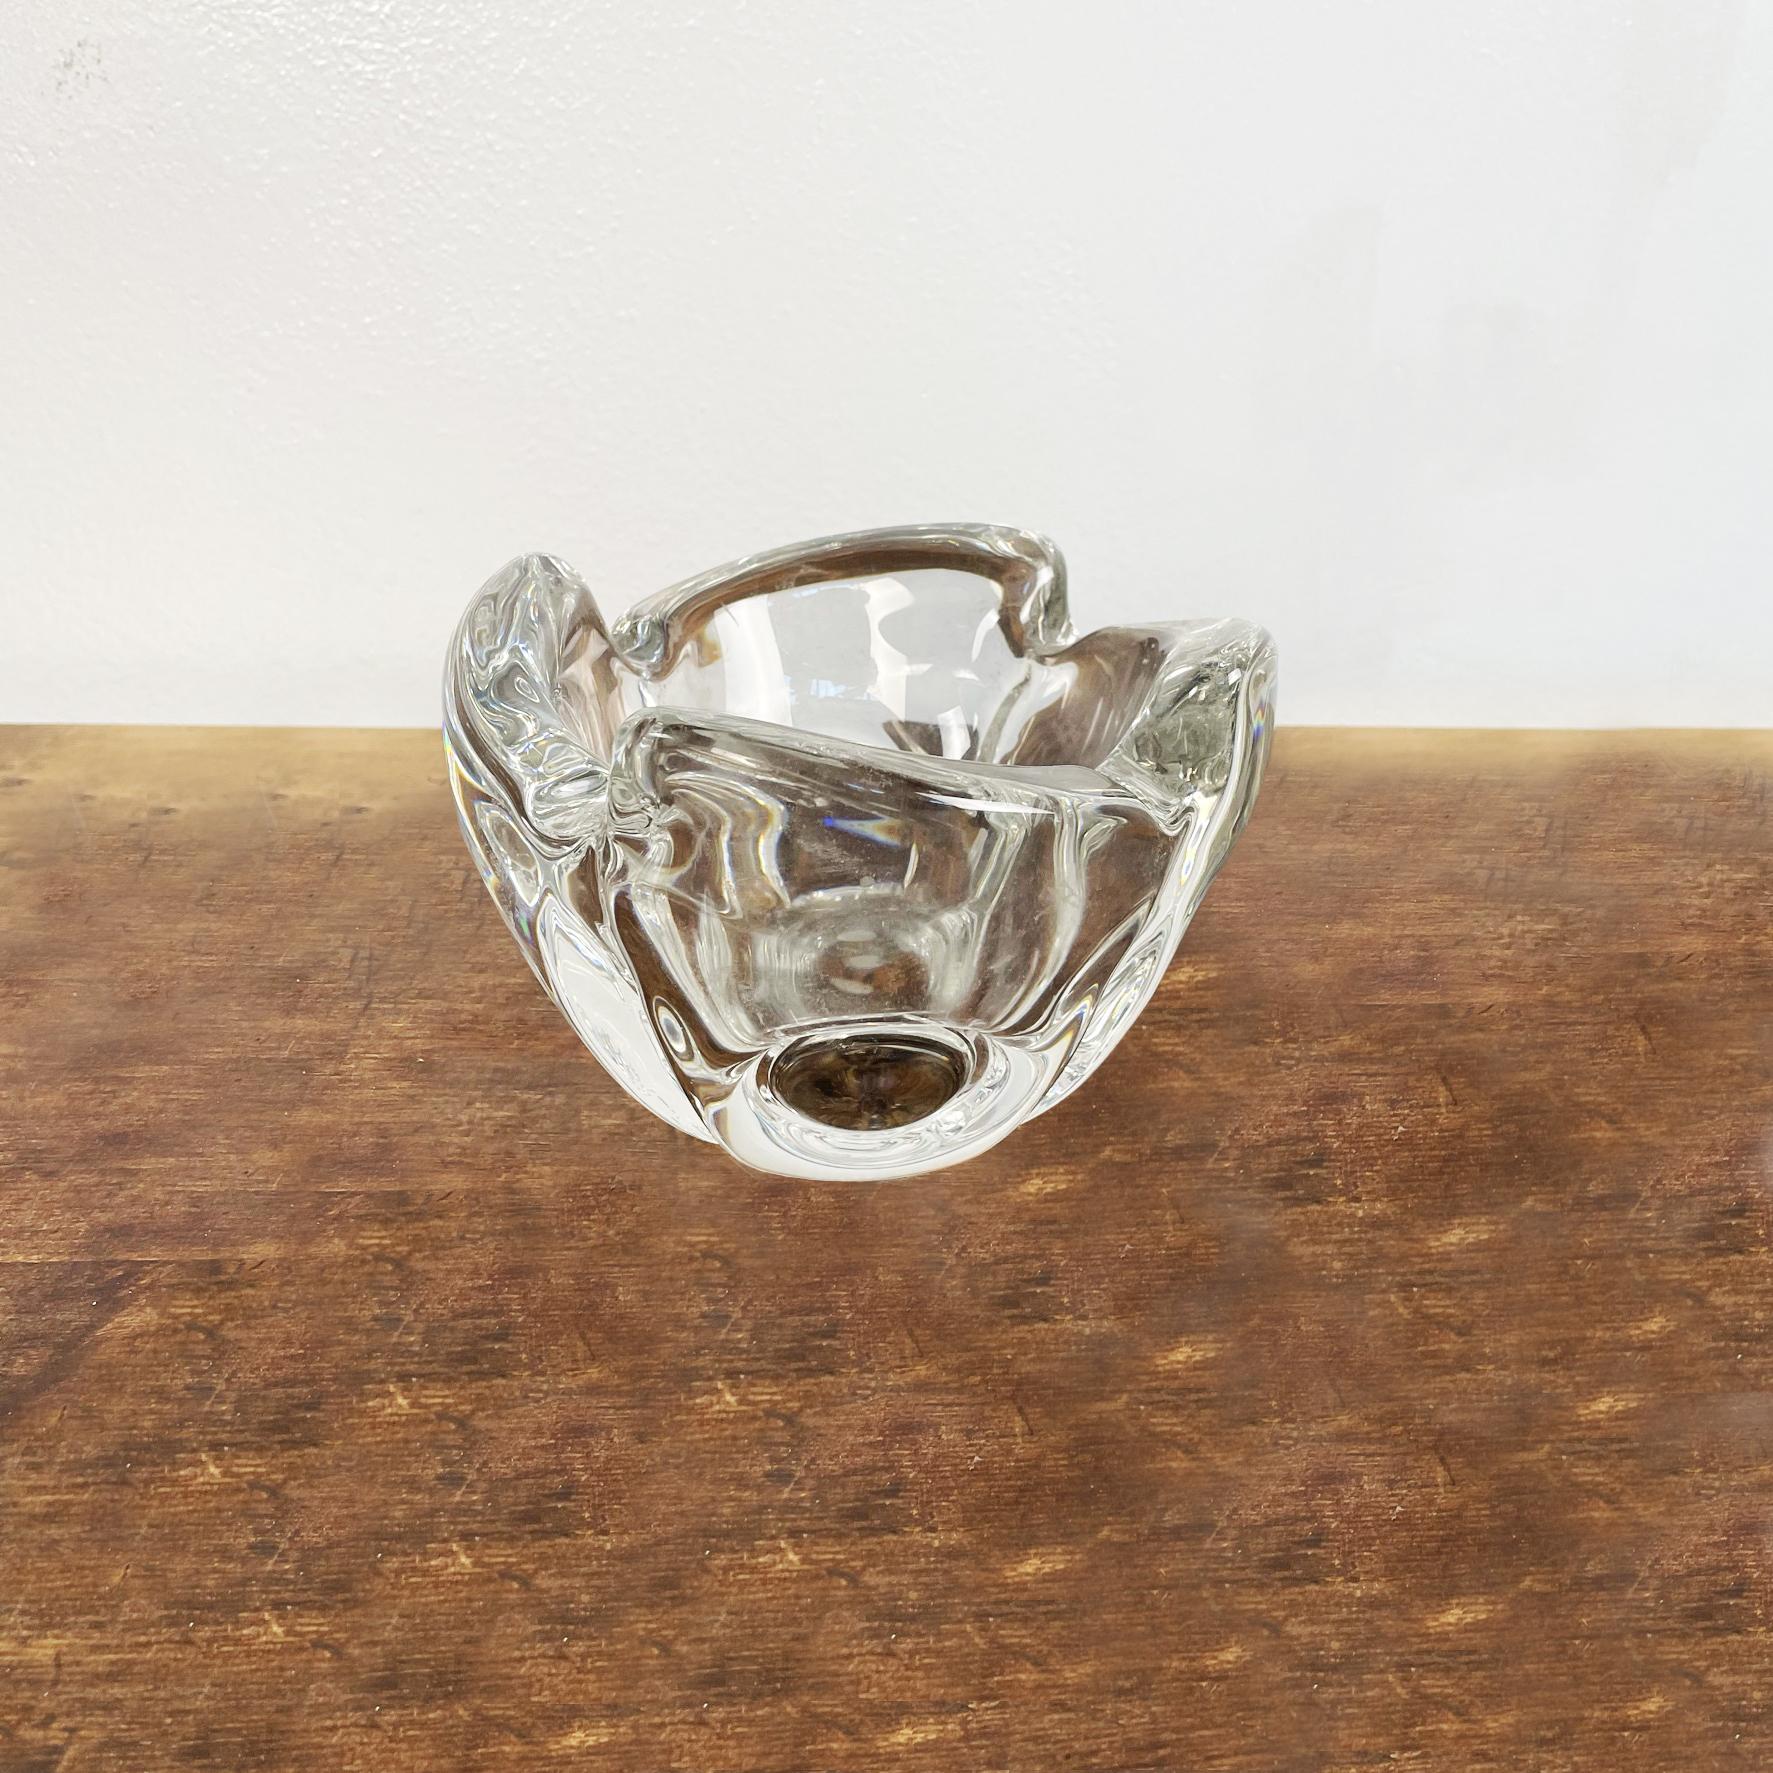 Italienischer Aschenbecher in Form einer Kristallblume aus der Jahrhundertmitte, 1970er Jahre.
Tisch-Aschenbecher mit rundem Kristallsockel. Die Struktur ähnelt einer vierblättrigen Blüte mit einem Kreis in der Mitte.
Dieser Aschenbecher ist sehr